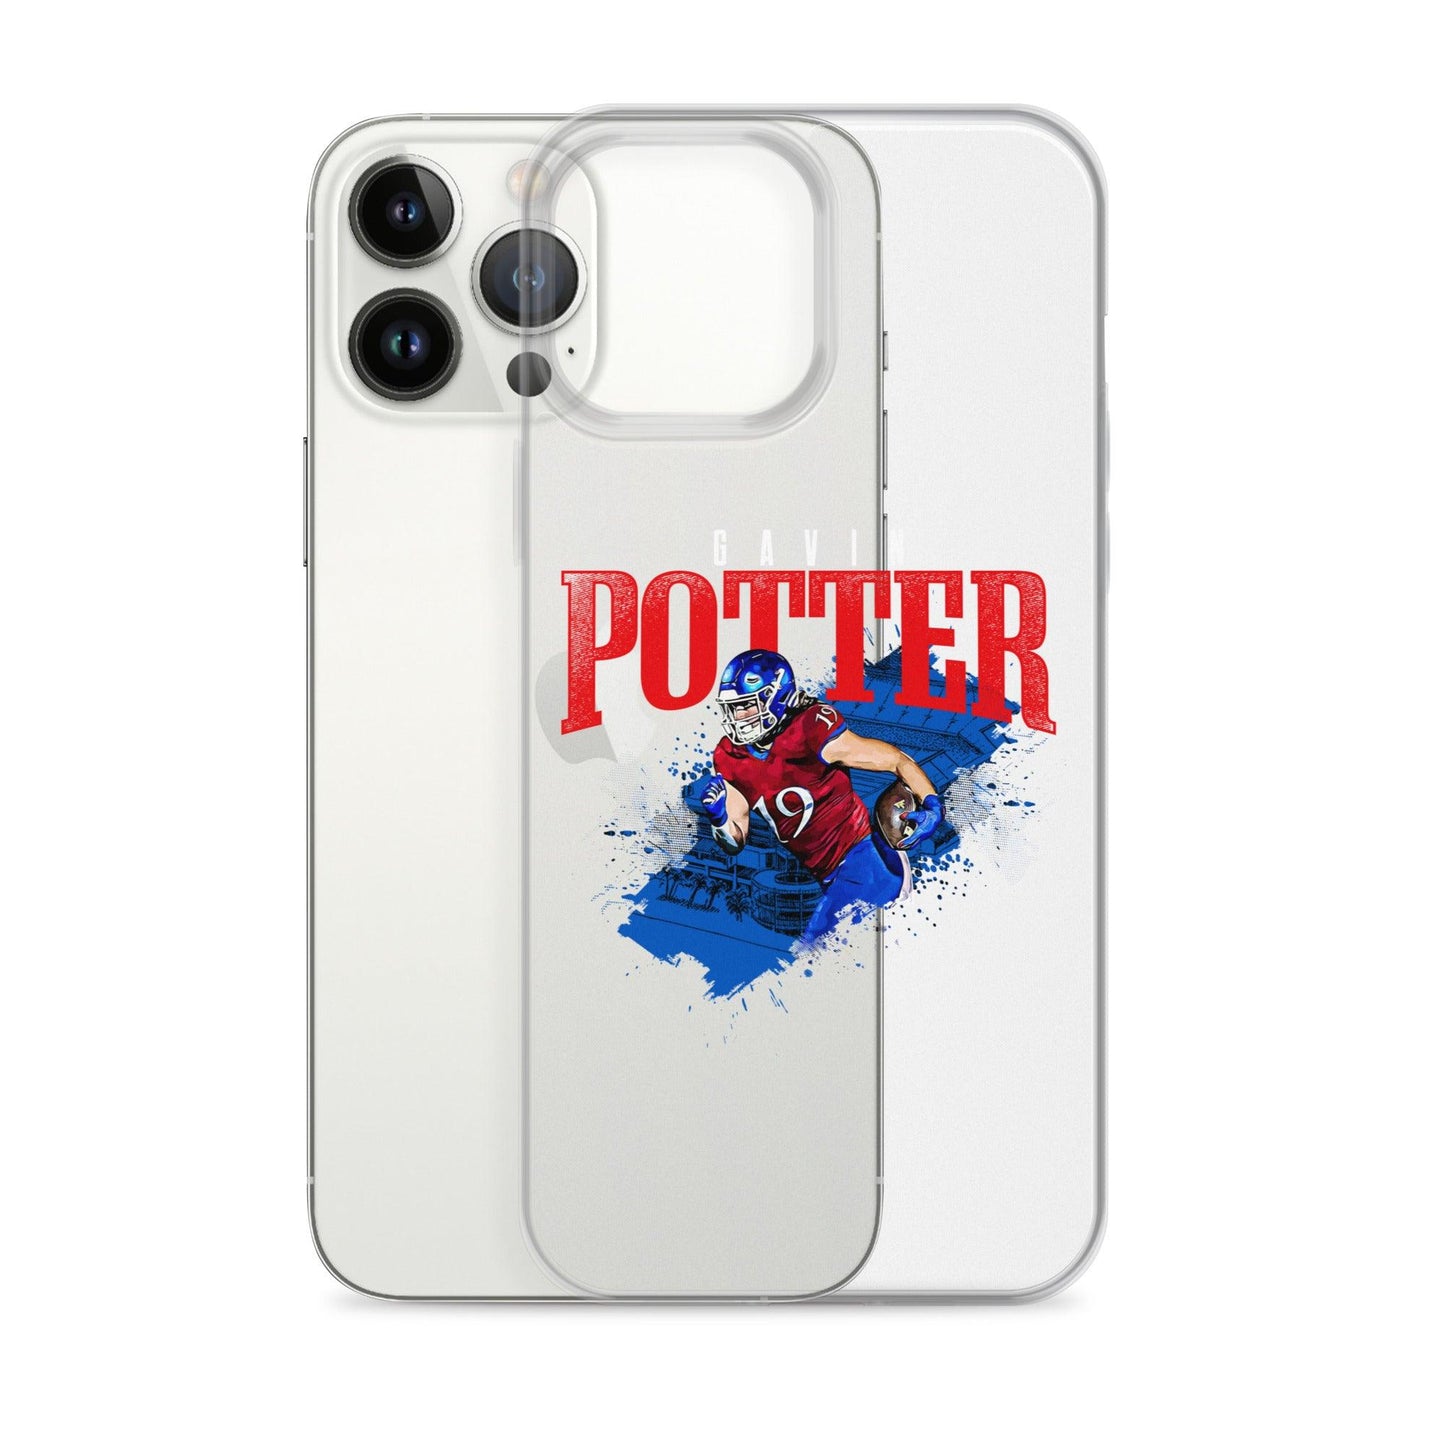 Gavin Potter "Gametime" iPhone Case - Fan Arch